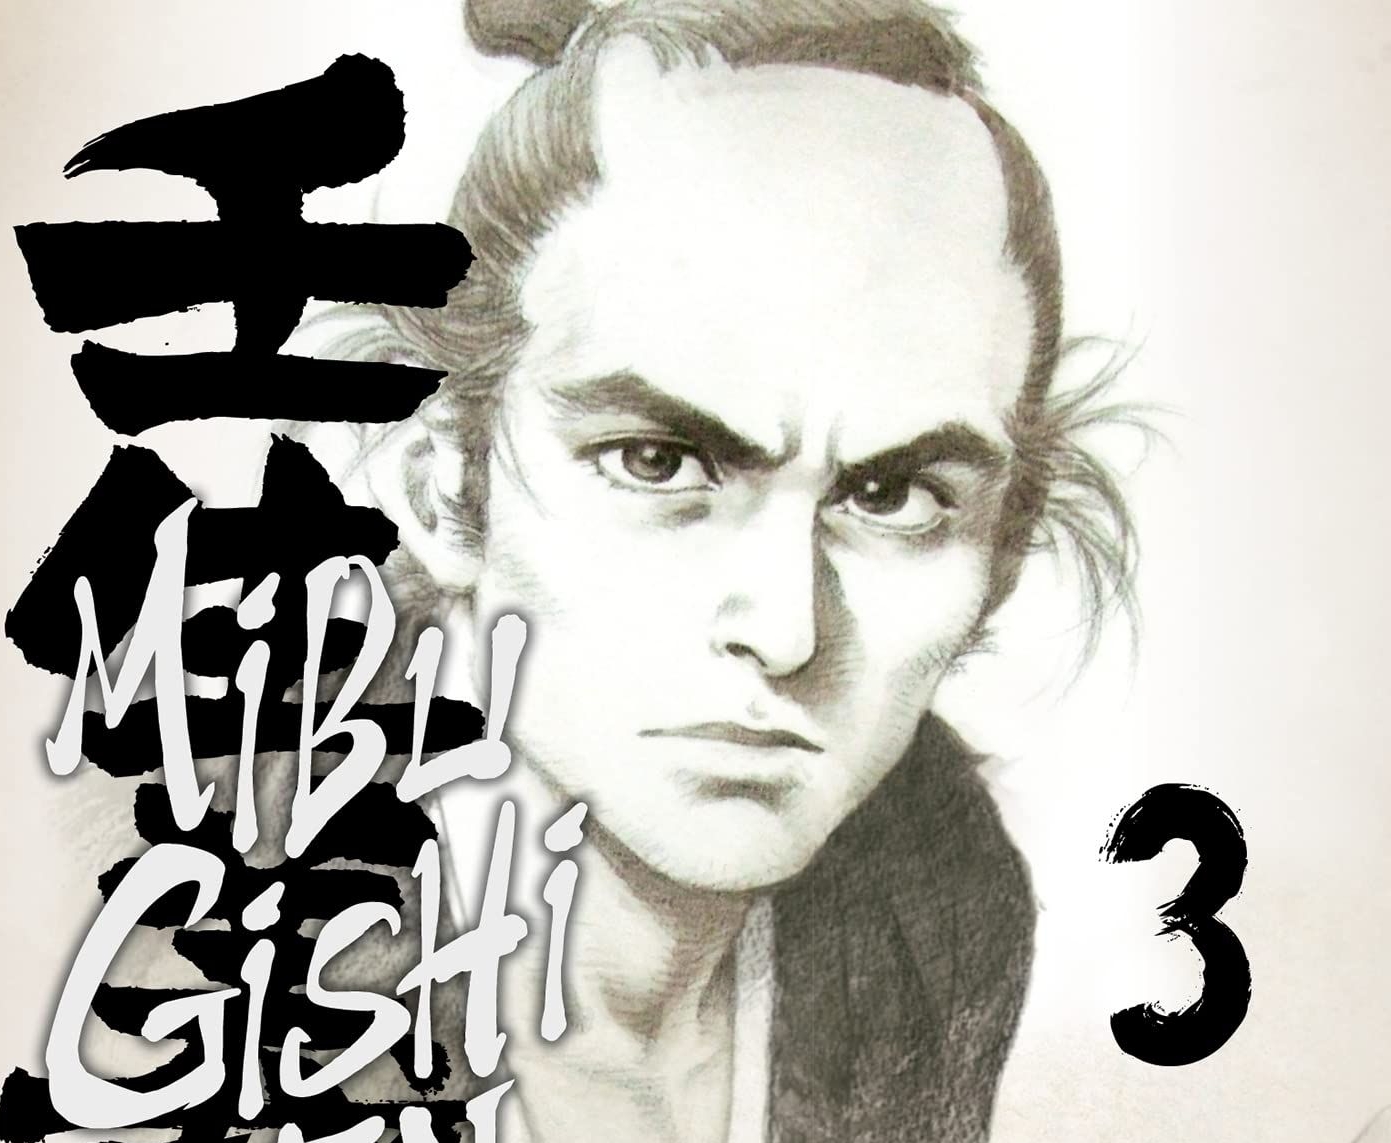 MibuGishiDentrois1 Découvrez la vie d’un samouraï dans Mibu Gishi Den